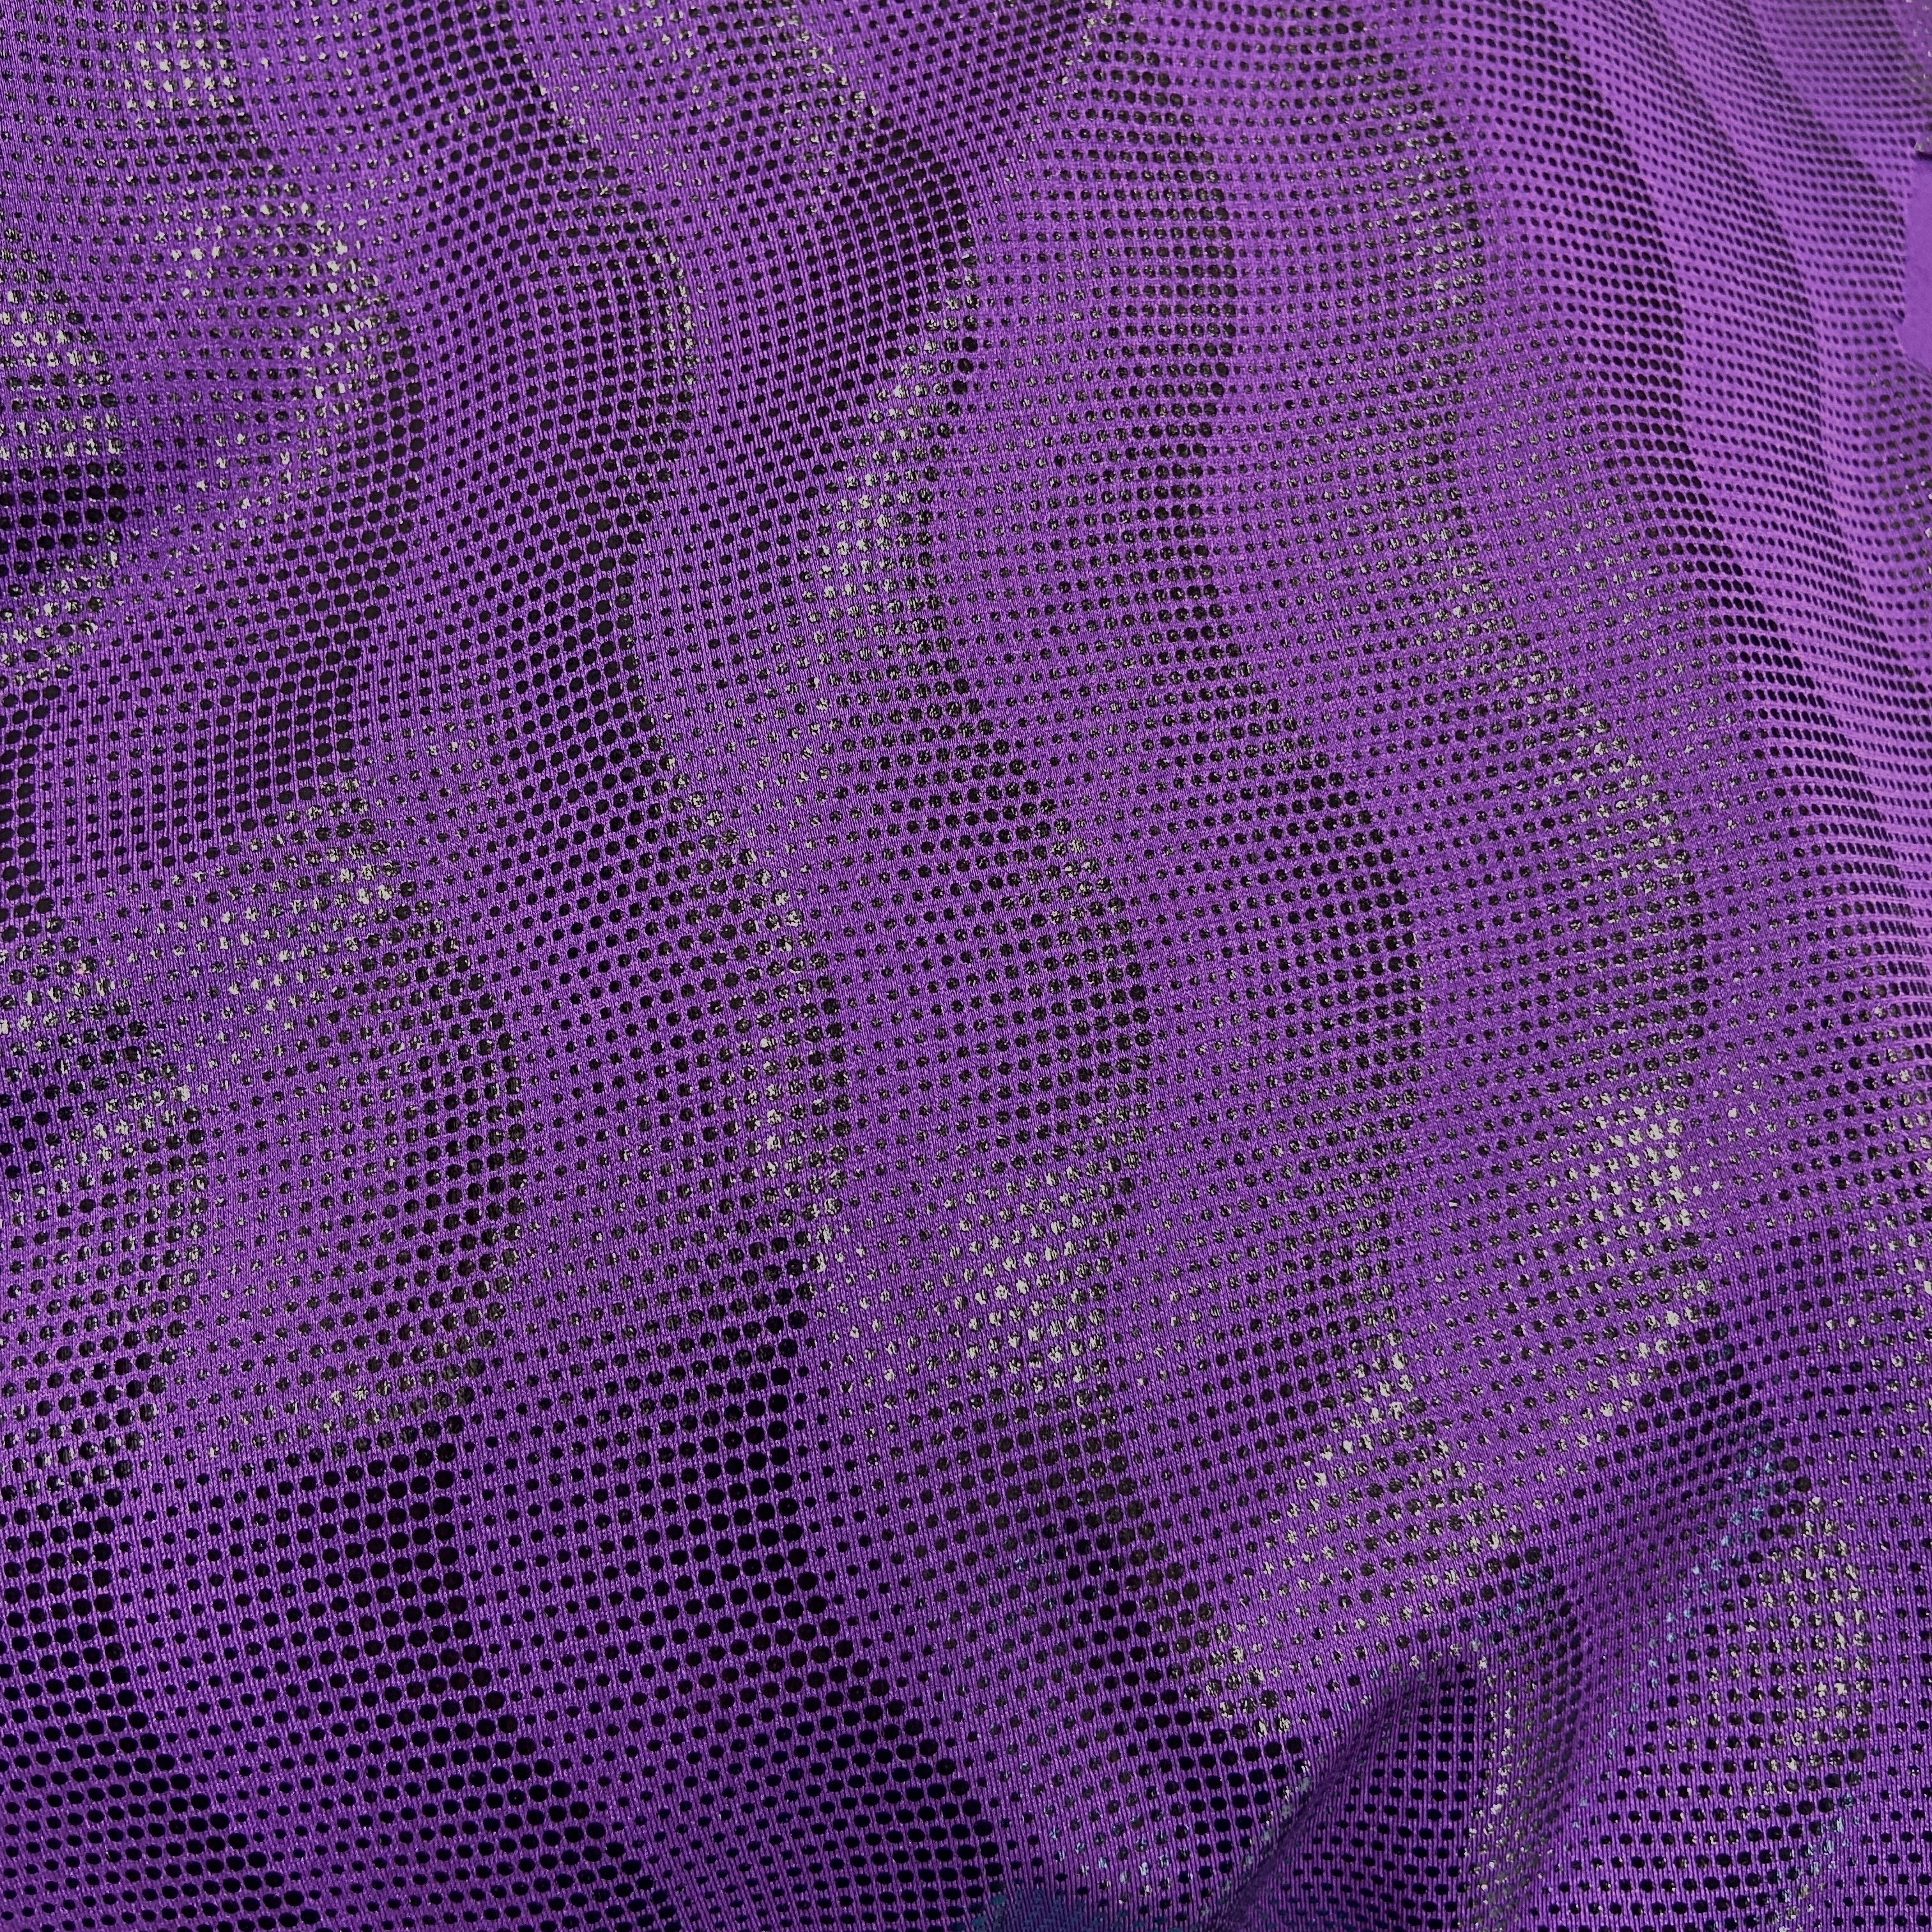 Purple black waves